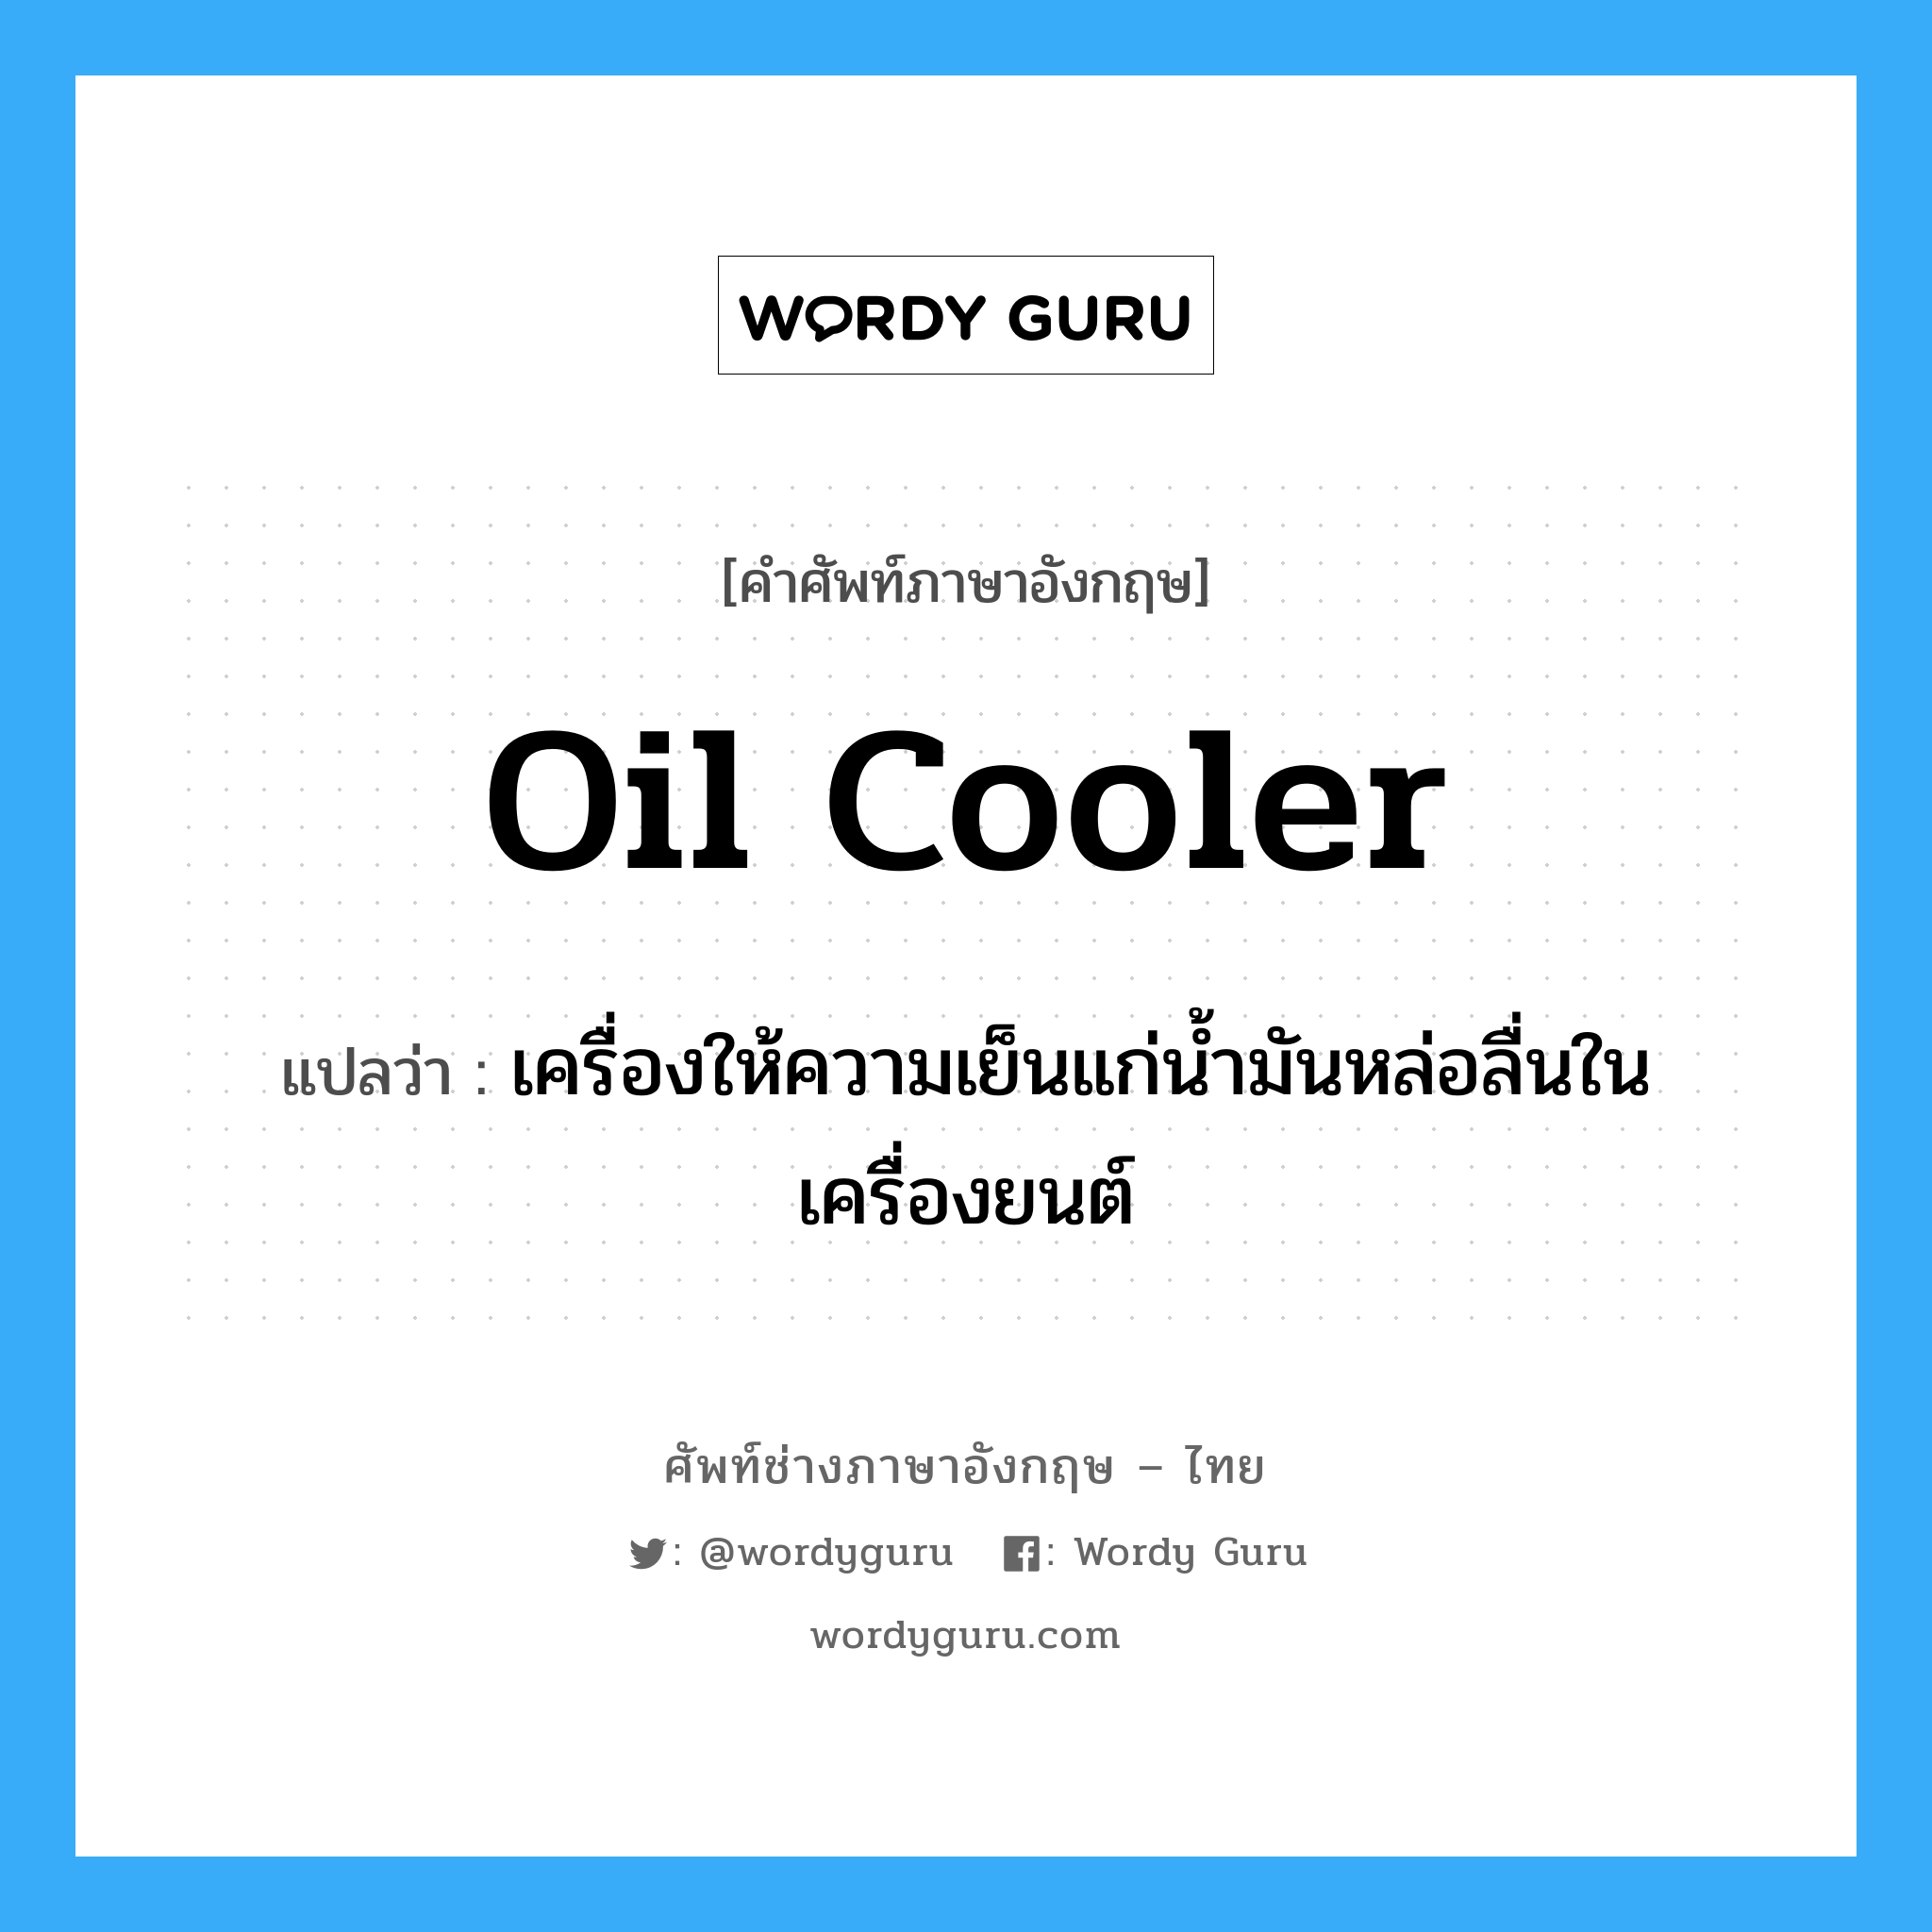 oil cooler แปลว่า?, คำศัพท์ช่างภาษาอังกฤษ - ไทย oil cooler คำศัพท์ภาษาอังกฤษ oil cooler แปลว่า เครื่องให้ความเย็นแก่น้ำมันหล่อลื่นในเครื่องยนต์